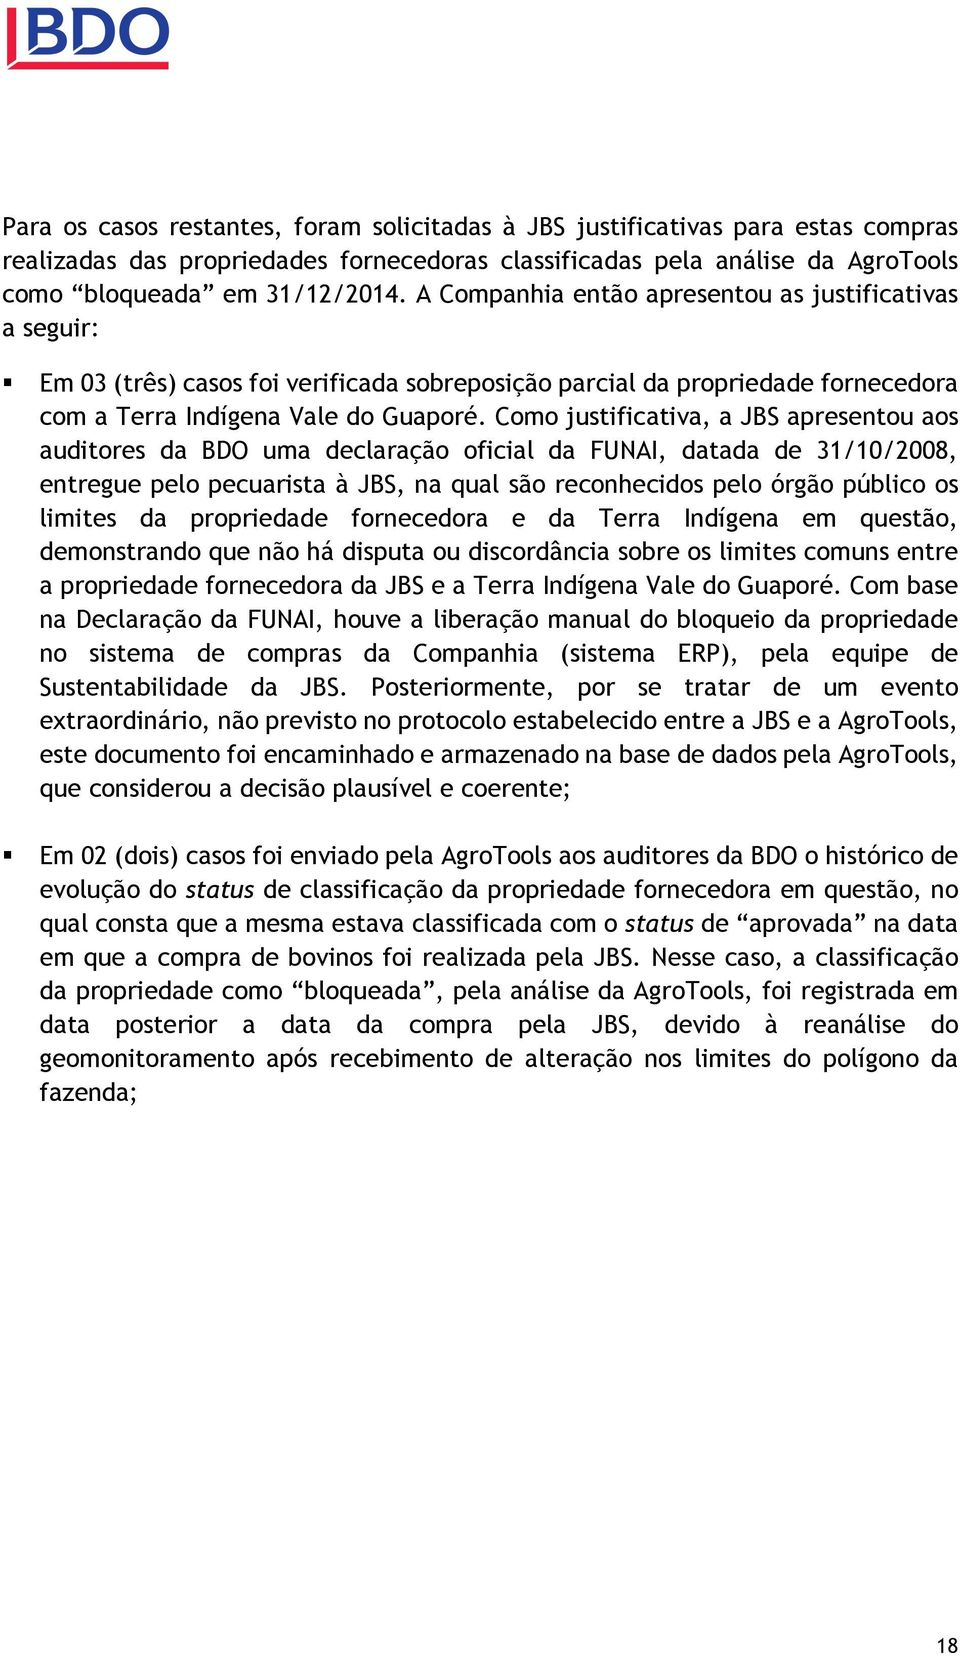 Como justificativa, a JBS apresentou aos auditores da BDO uma declaração oficial da FUNAI, datada de 31/10/2008, entregue pelo pecuarista à JBS, na qual são reconhecidos pelo órgão público os limites